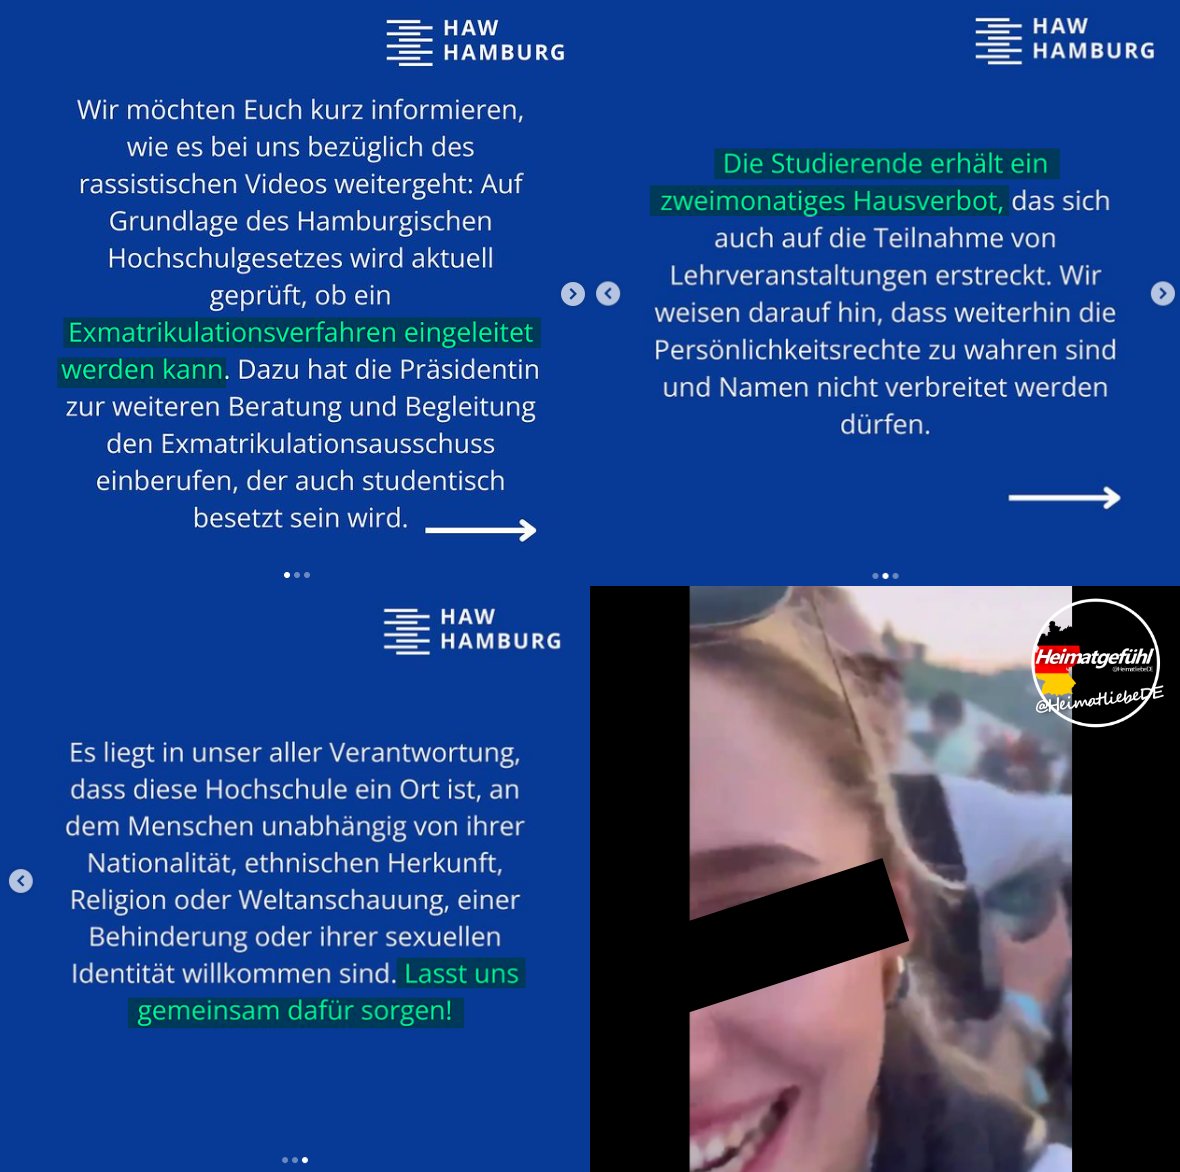 Hochschule will junge Frau von #Sylt rausschmeißen! Funfact: Wir sprechen hier von der Hochschule, die das Islamismus-Problem hat. (Muslim Interaktiv) Deutschland ist komplett lost. #HAWHamburg